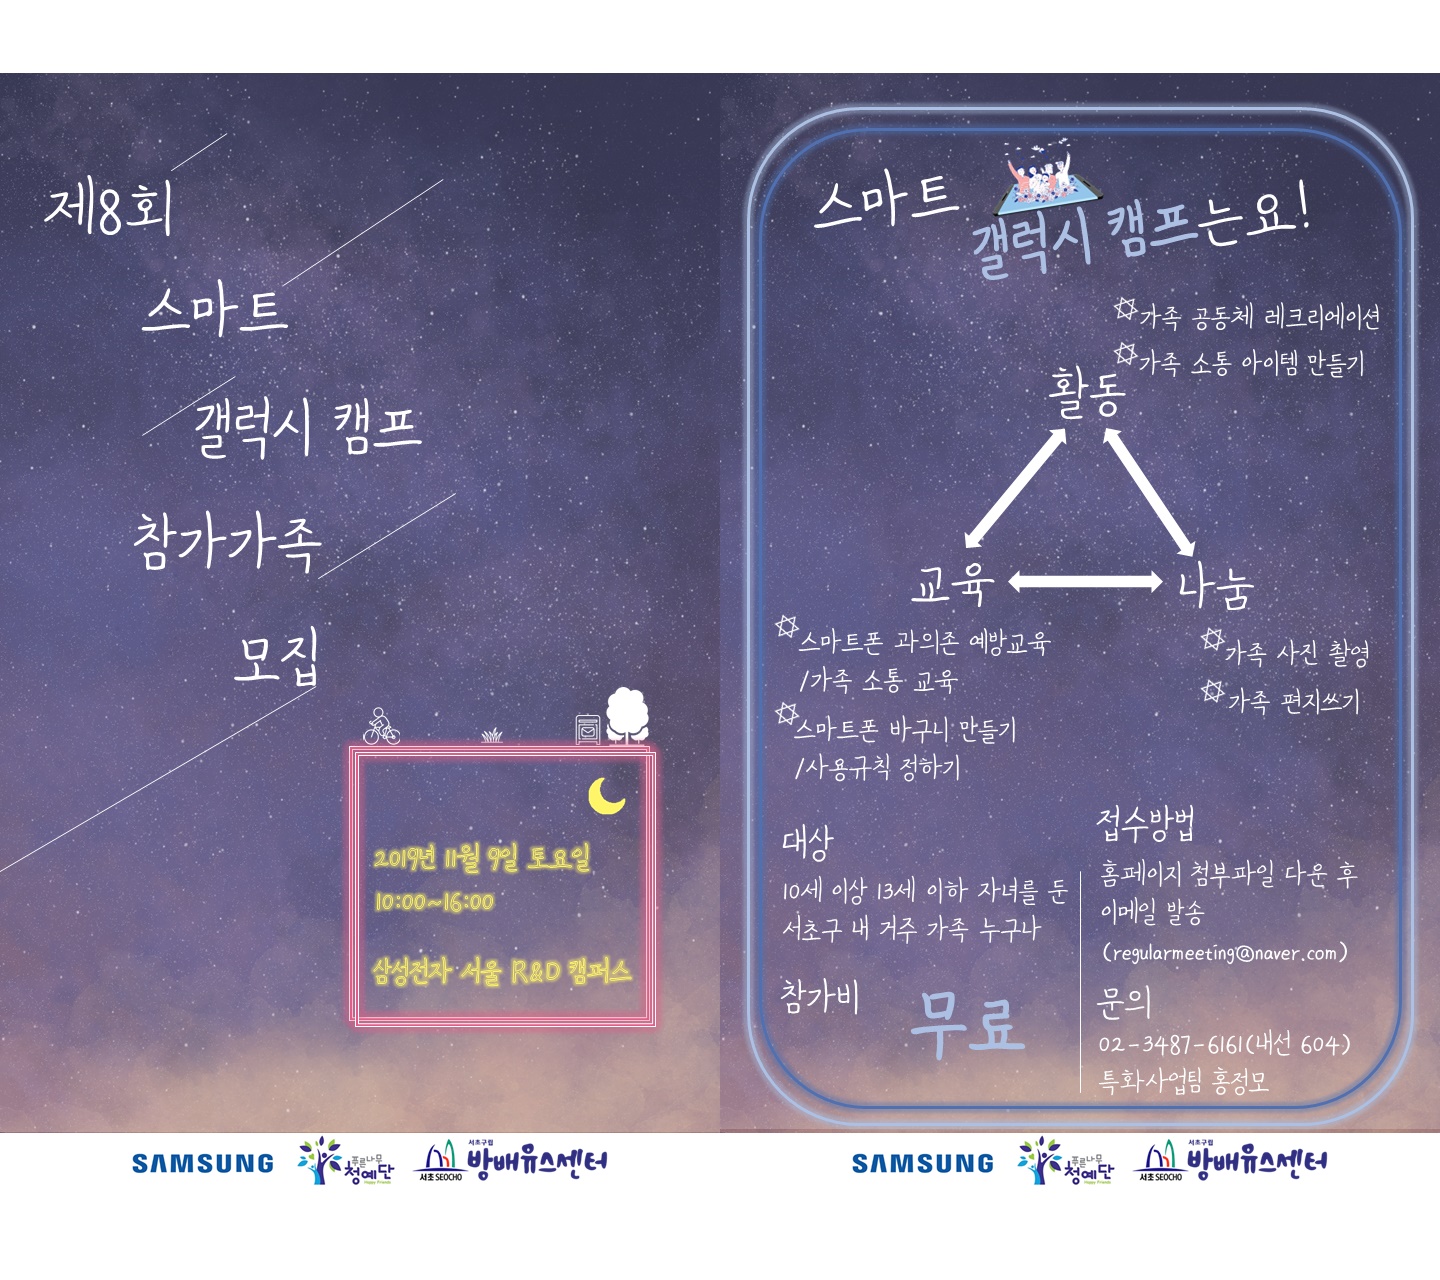 [서울] [서초구립방배유스센터] 스마트 갤럭시 캠프